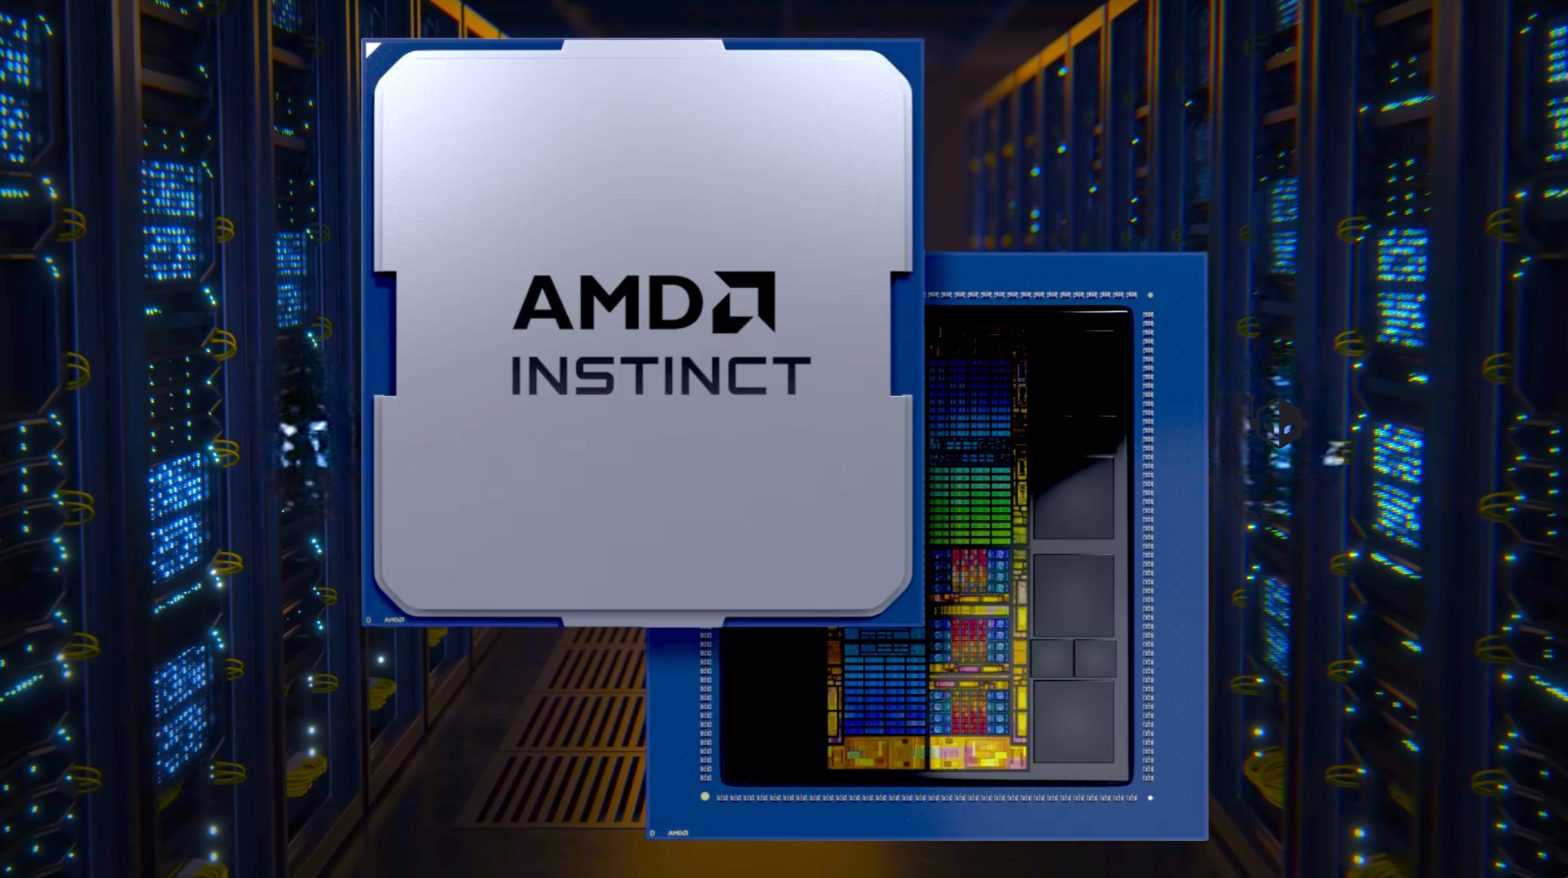 دل شتاب دهنده های پیشرفته هوش مصنوعی MI300X AMD را در سرورهای هوش مصنوعی «PowerEdge» ارائه می کند.